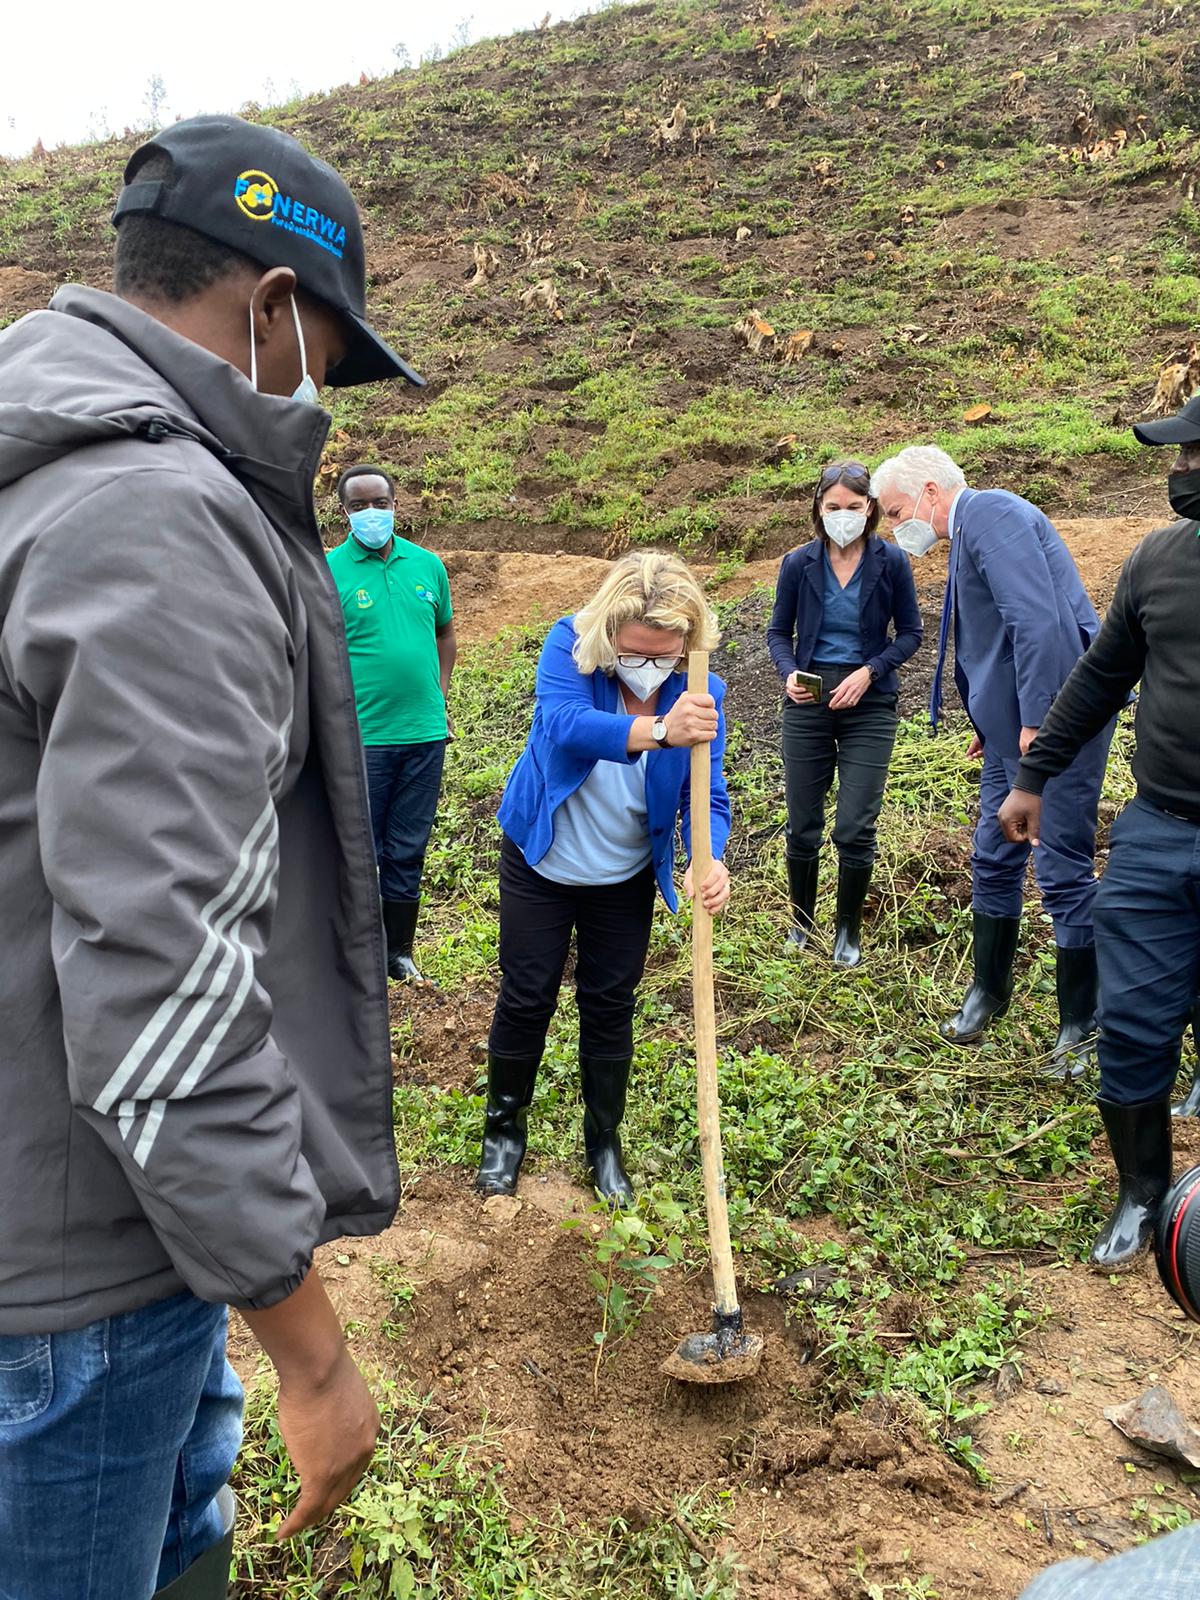 Baumpflanzaktion während des Besuchs eines Green-Climate-Fund-Projekts zu Klimaanpassung im Gicumbi Distrikt im Norden Ruandas